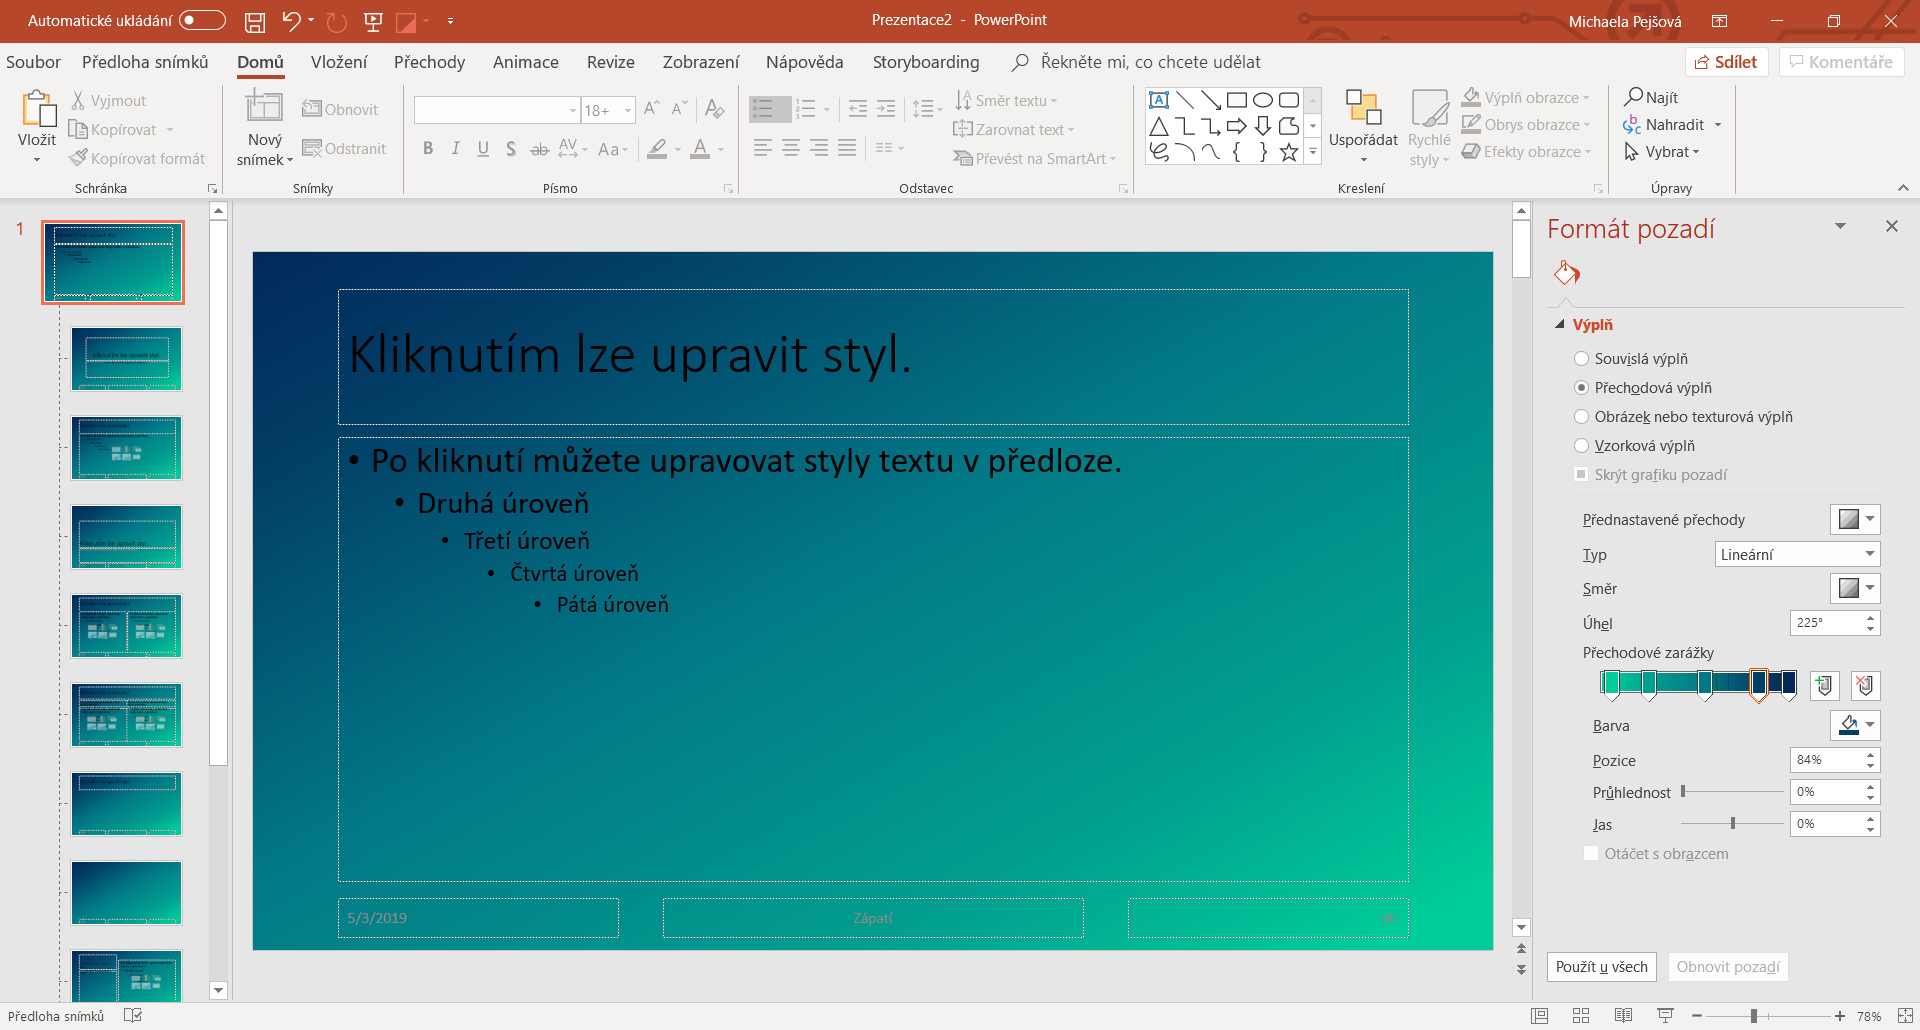 Úprava pozadí předlohy snímku v Microsoft PowerPoint - Základy Microsoft PowerPoint